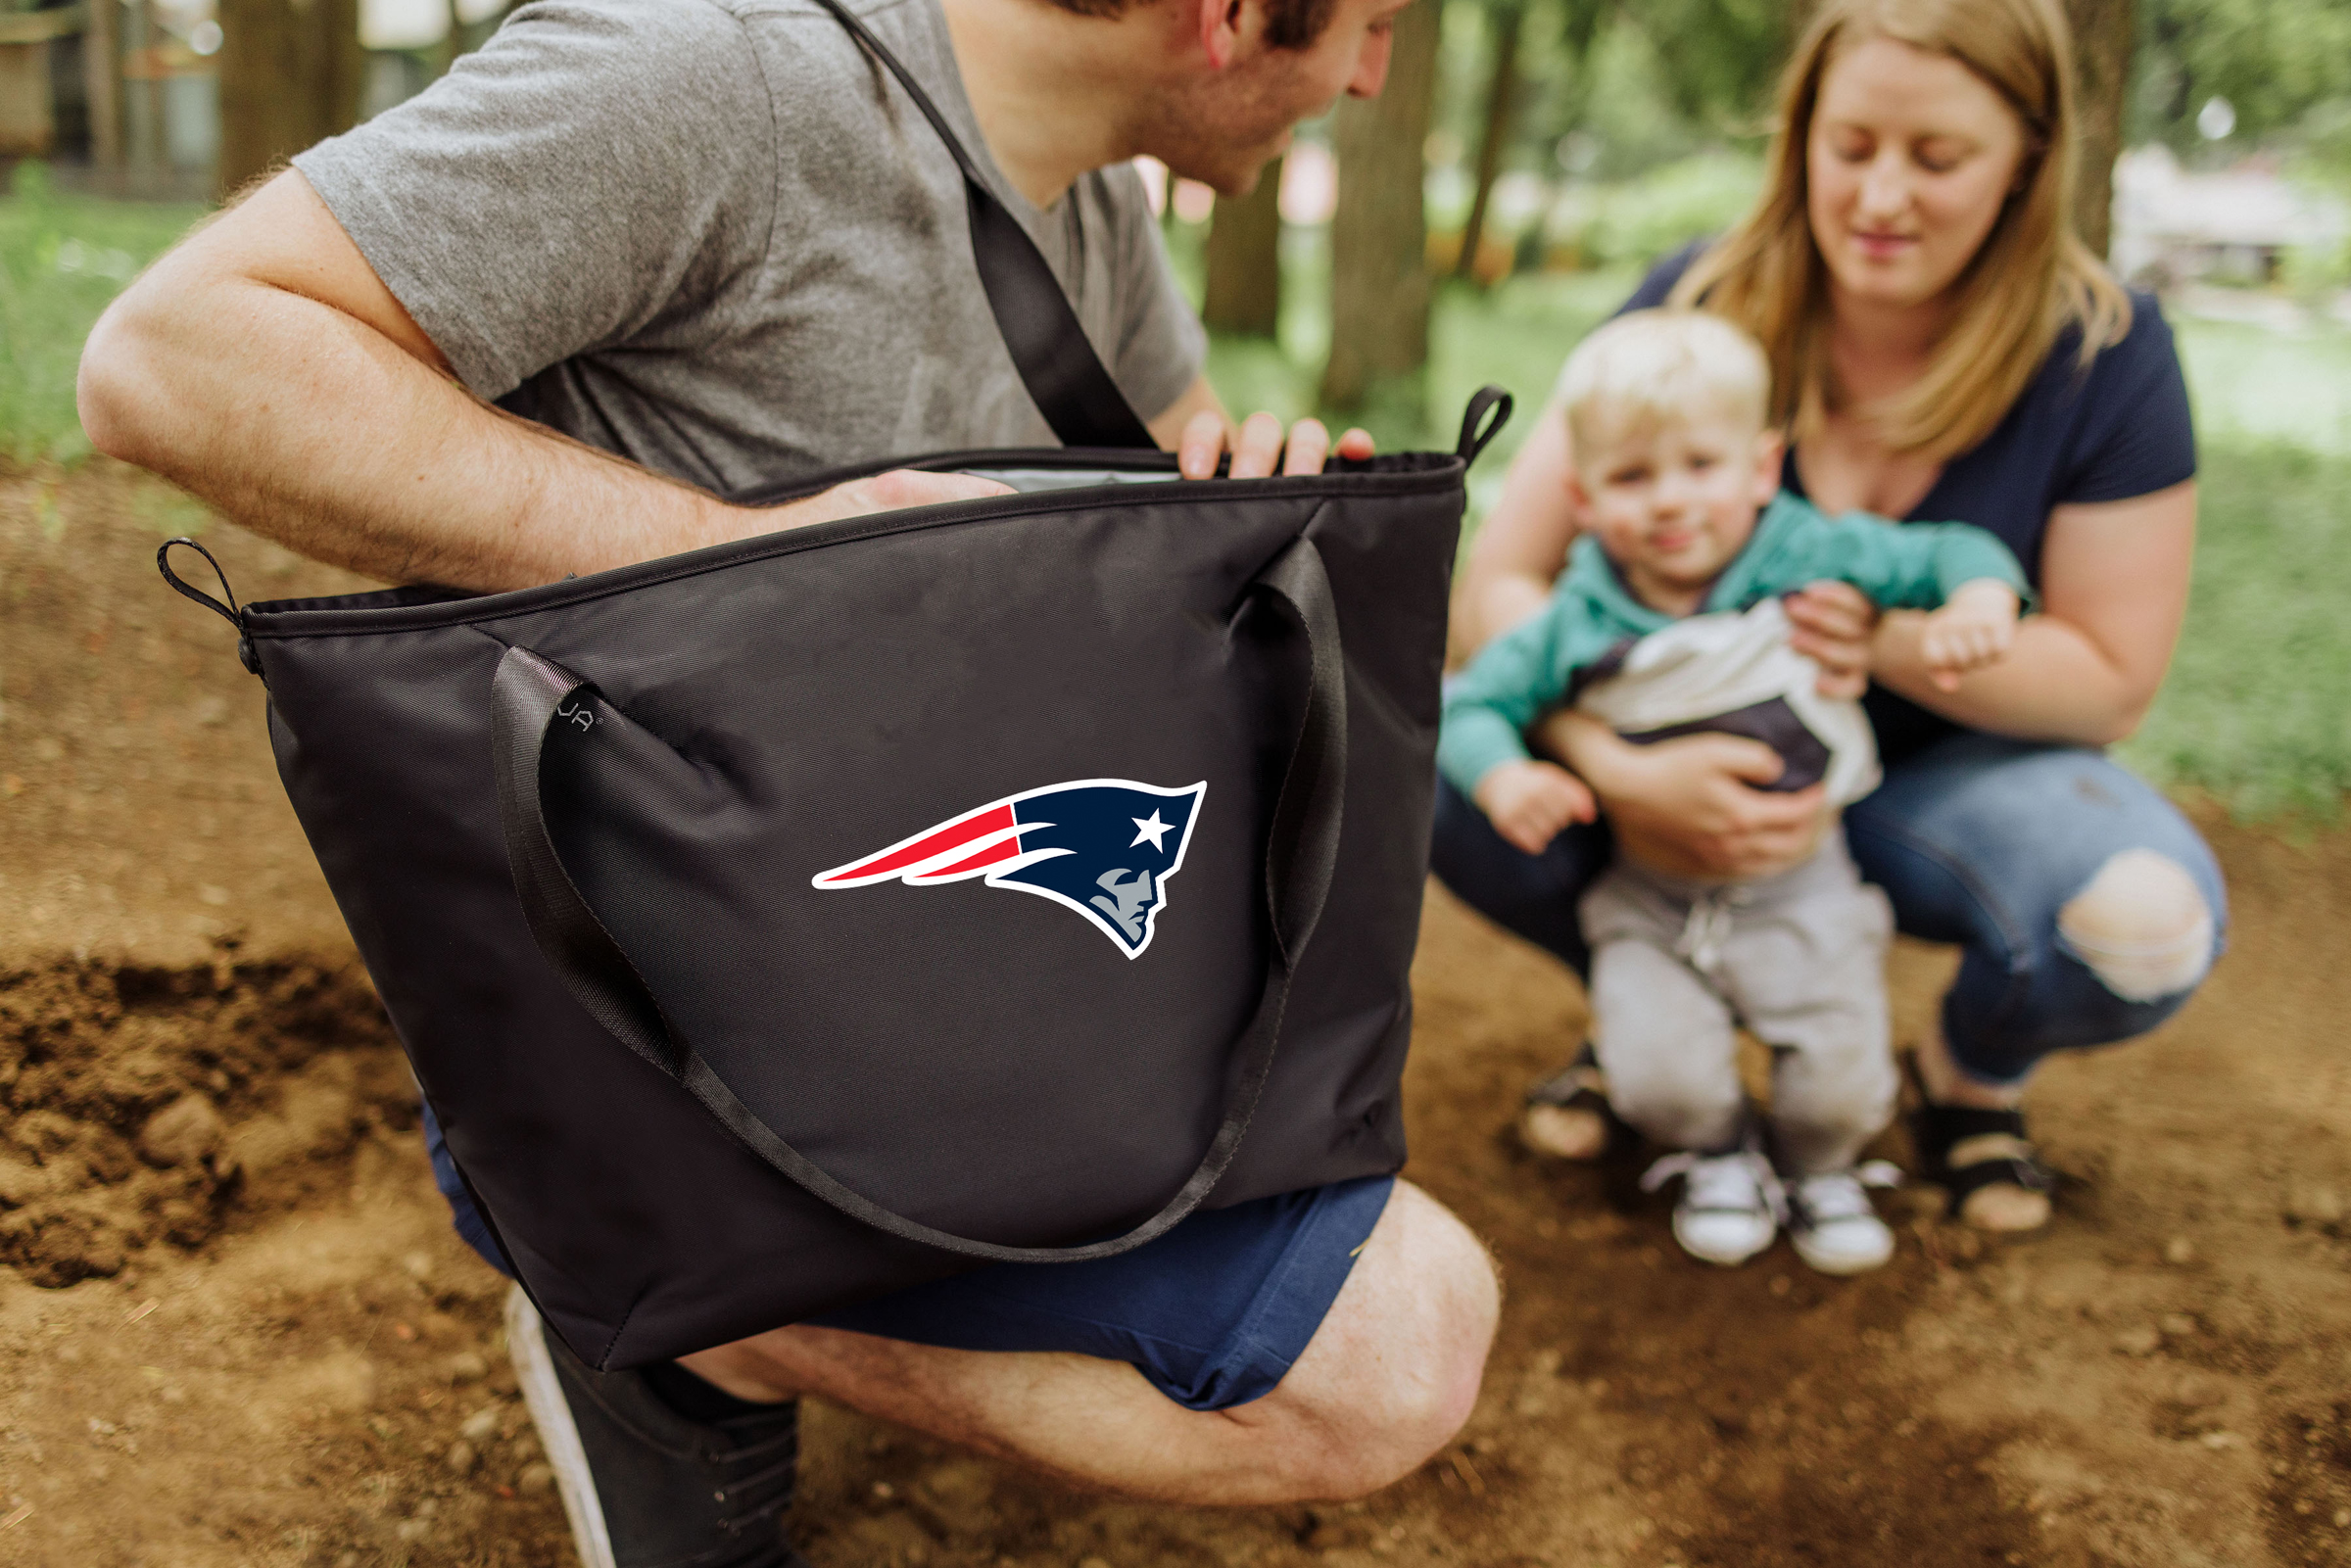 New England Patriots - Tarana Cooler Tote Bag